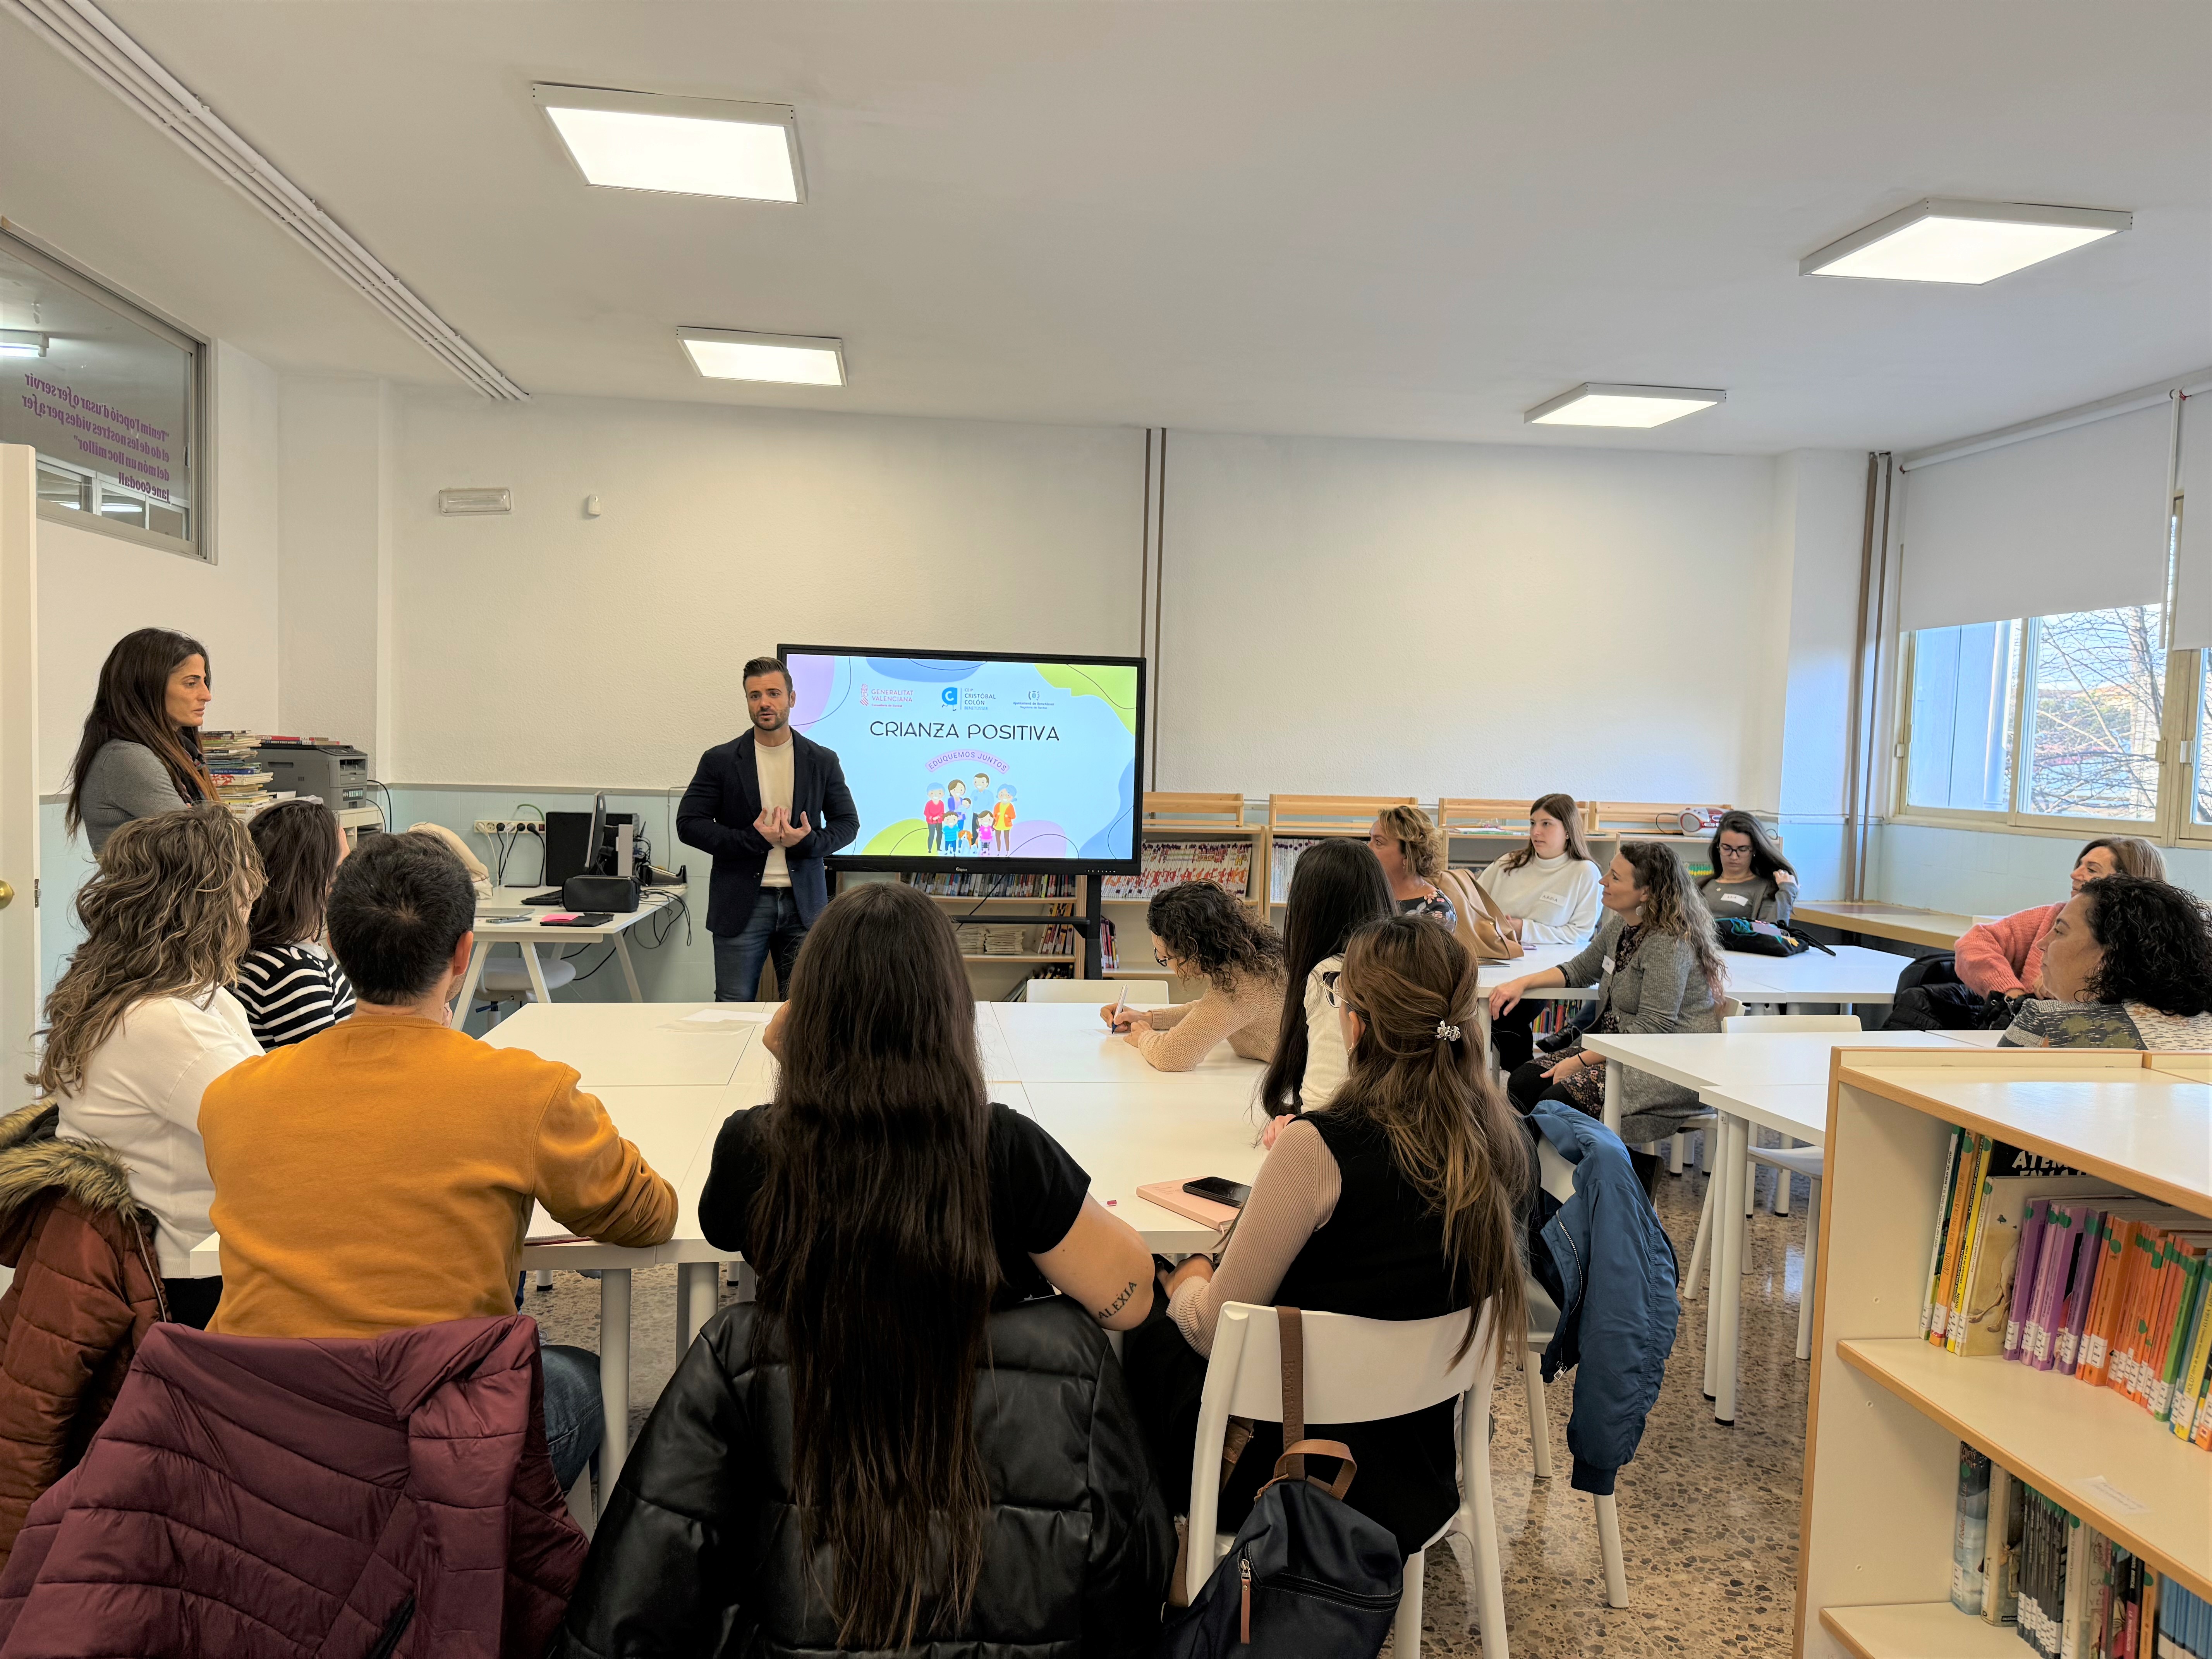 El departament de salut València – Doctor Peset inicia a Benetússer un cicle de tallers per a la criança positiva